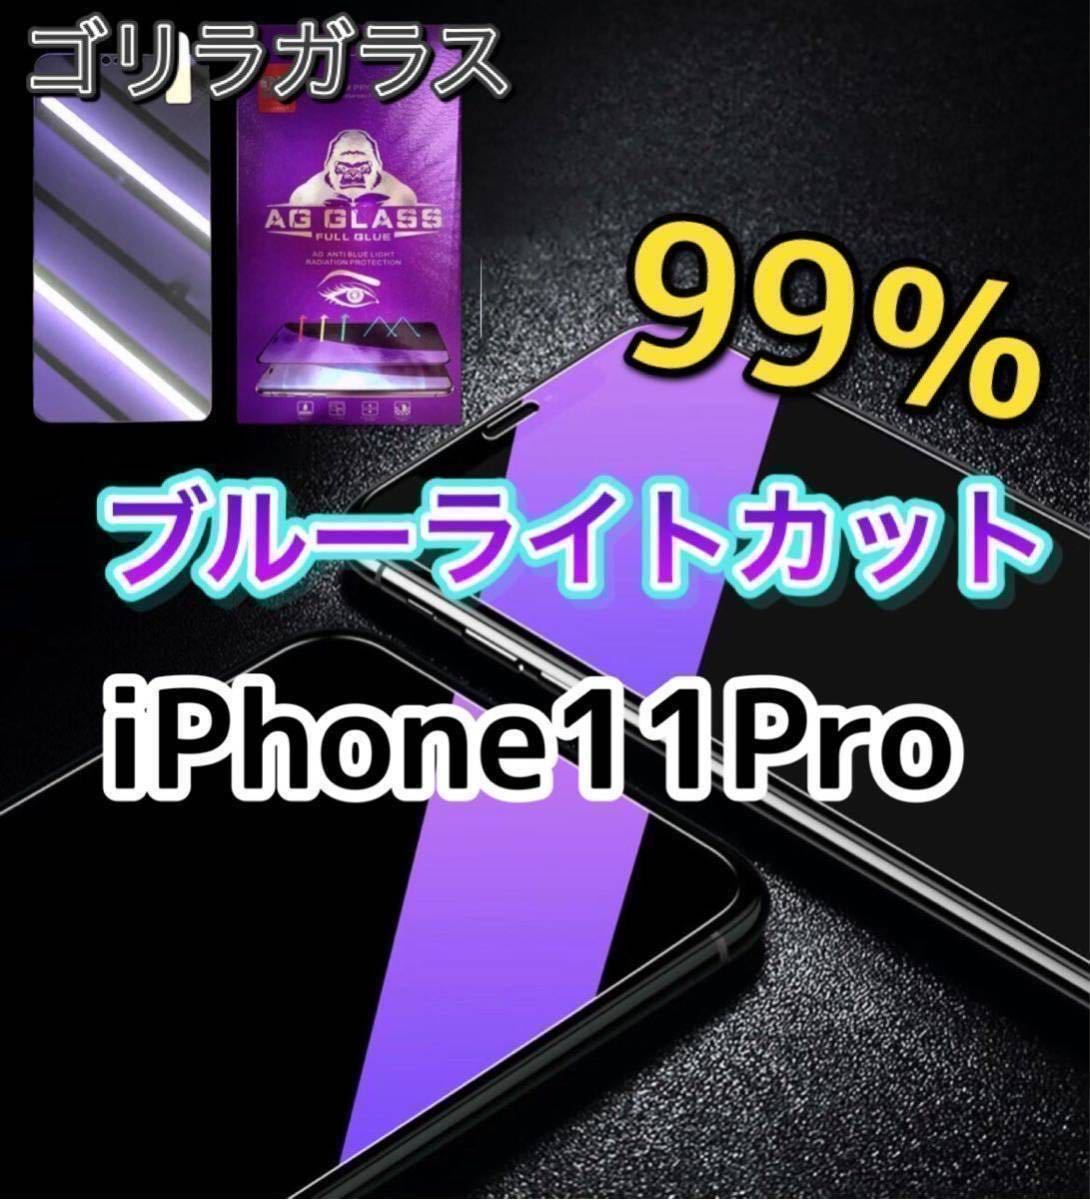 【iPhone11Pro】ブルーライト99%カットガラスフィルム